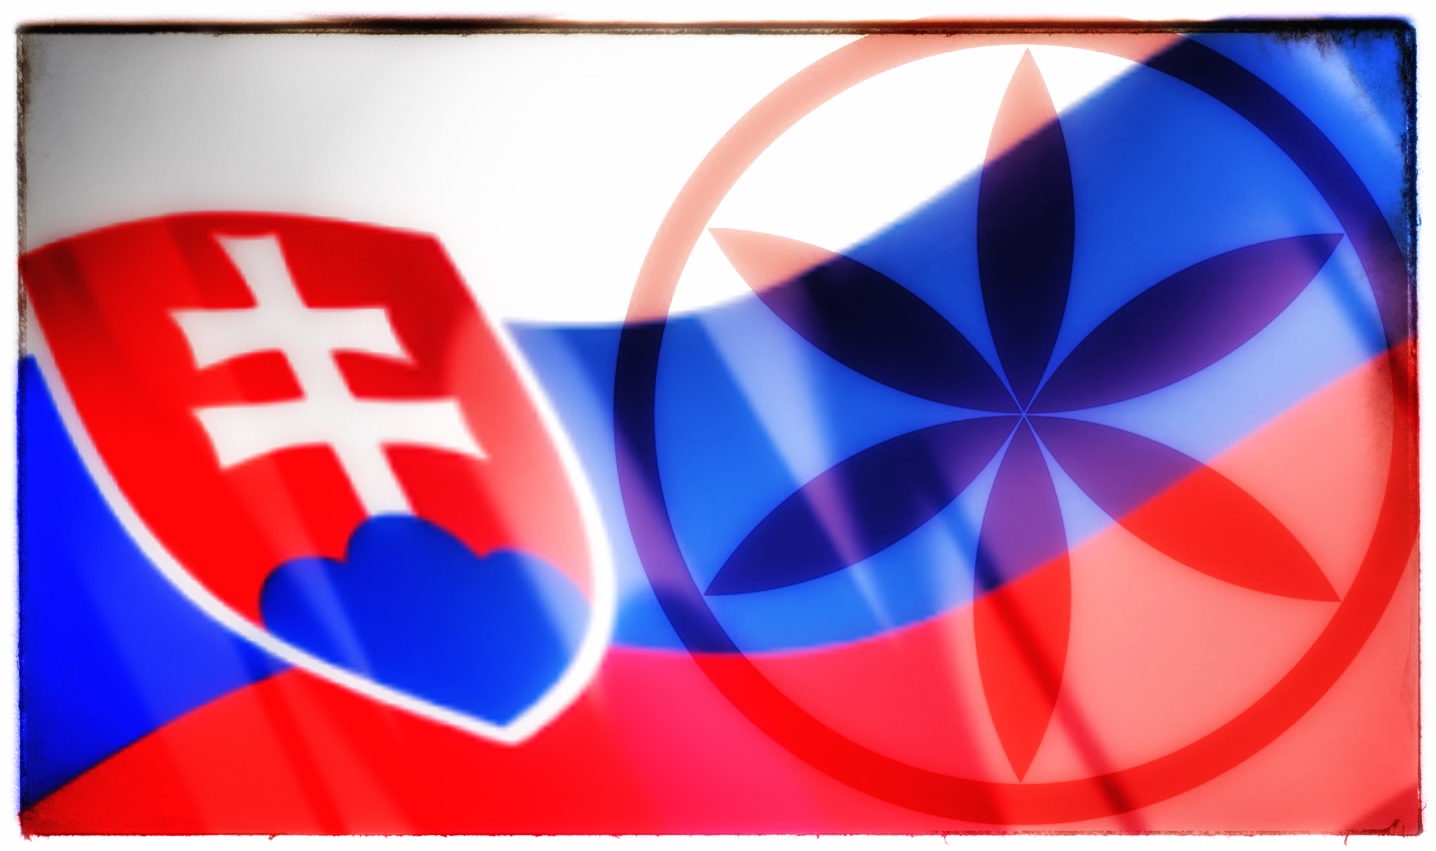 Veľmi zaujímavé je významné postavenie Slovákov – Slovienov (Slovien, Slovienka, Sloviensko) ako národa, pretože podľa najnovších štúdií patríme medzi najstaršie národy v Európe vôbec.